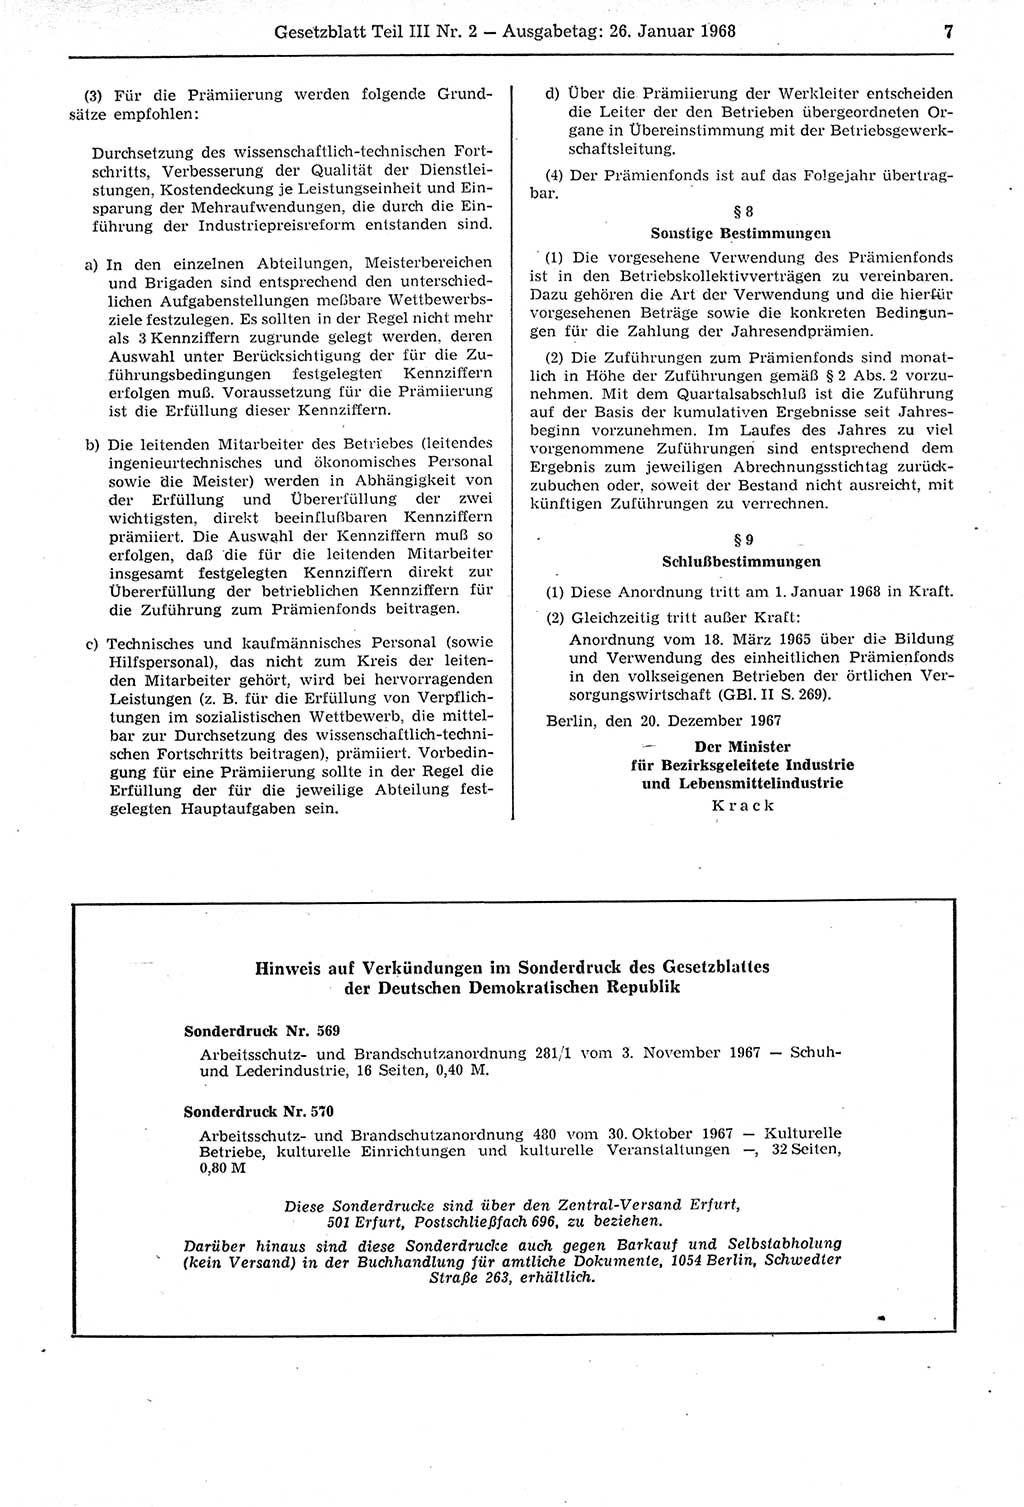 Gesetzblatt (GBl.) der Deutschen Demokratischen Republik (DDR) Teil ⅠⅠⅠ 1968, Seite 7 (GBl. DDR ⅠⅠⅠ 1968, S. 7)